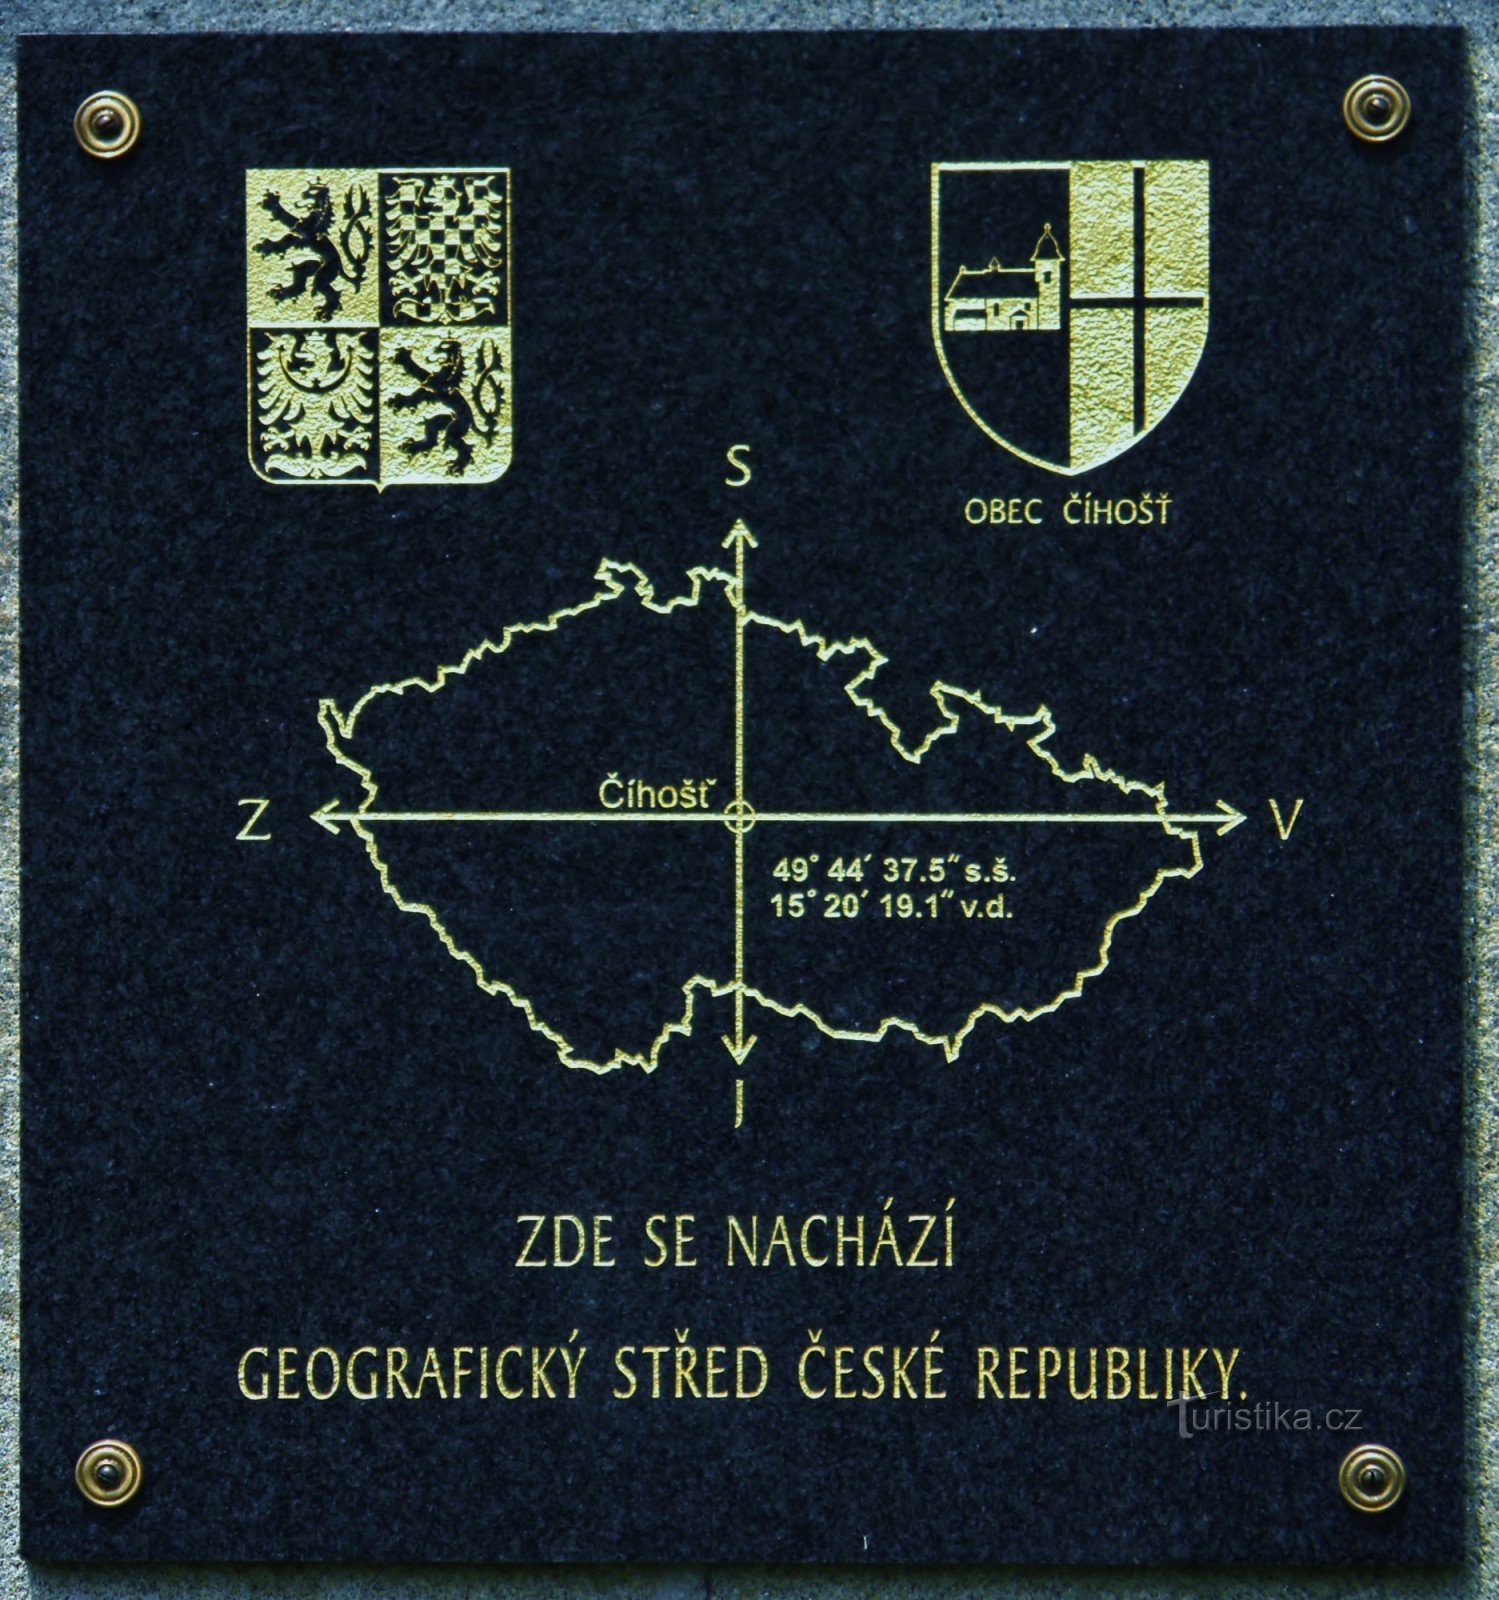 Tablica informacyjna na kamiennym pomniku w geograficznym centrum Czech.